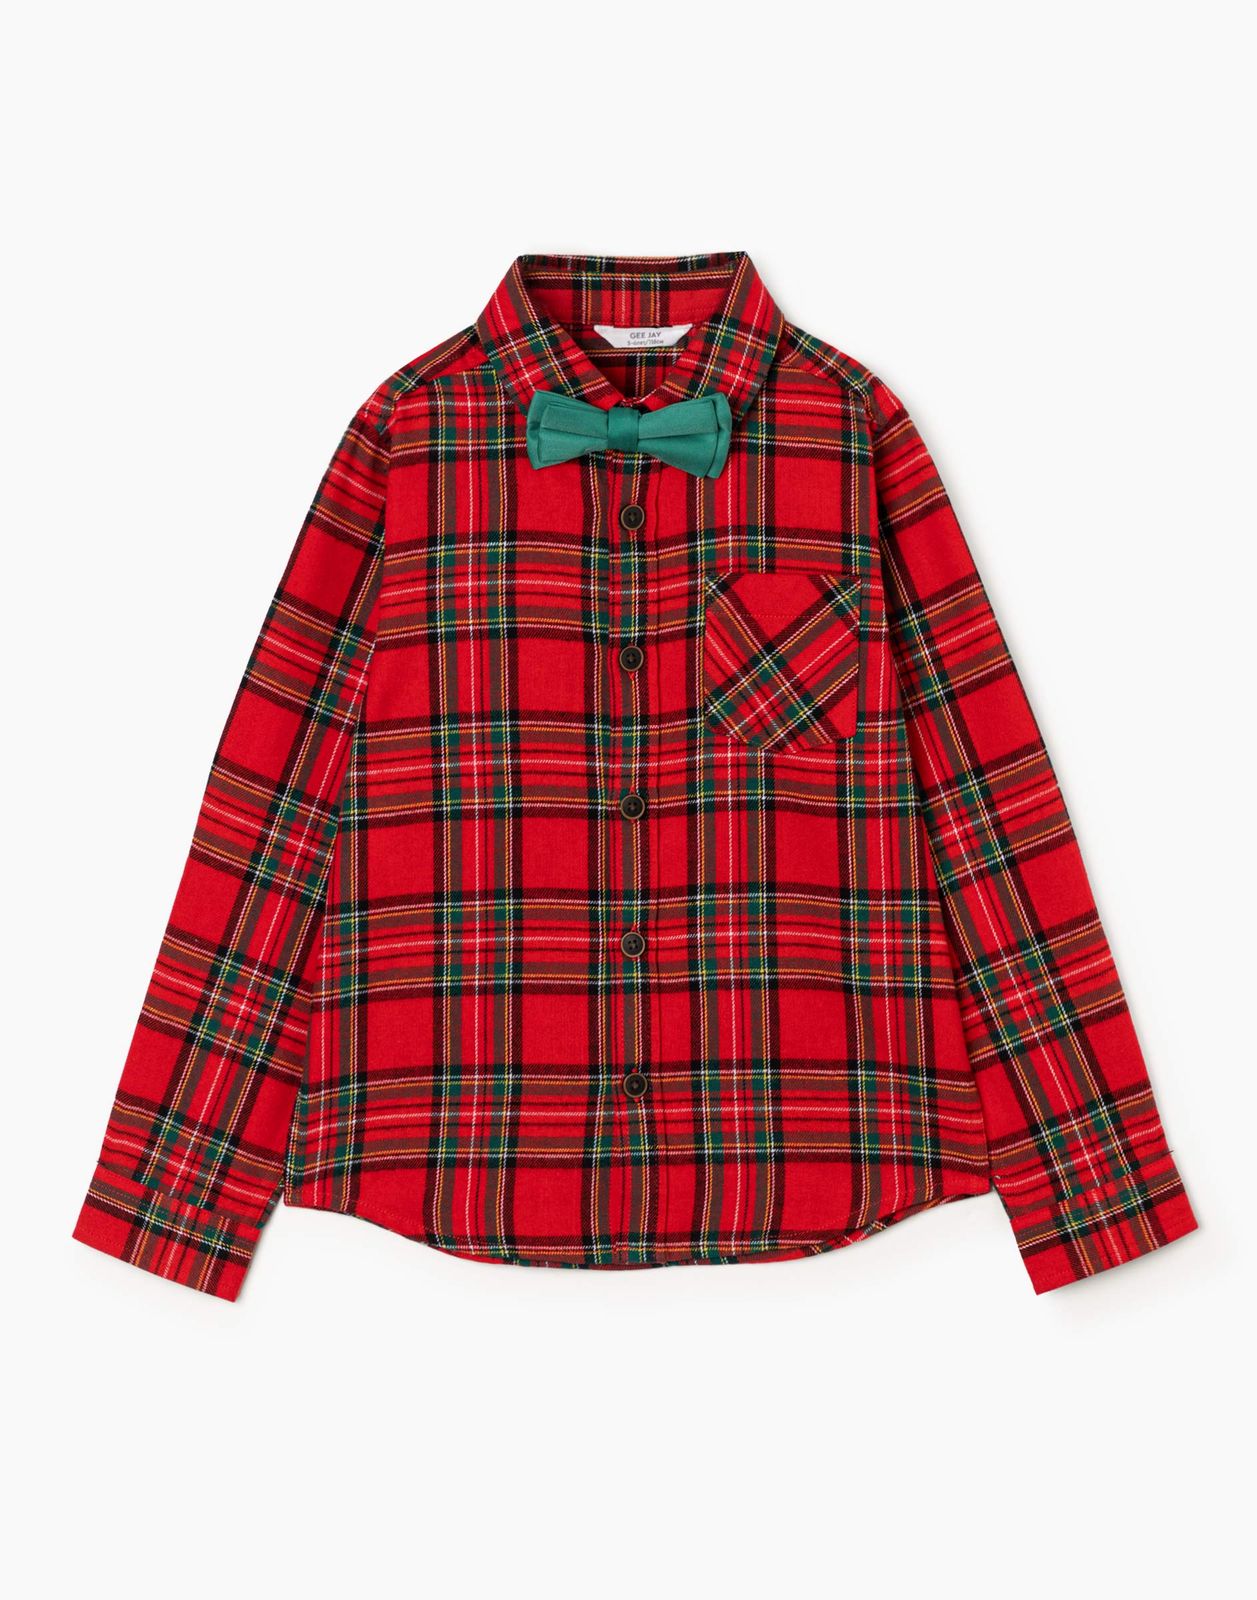 Рубашка детская Gloria Jeans BSE000667, красный/разноцветный, 122